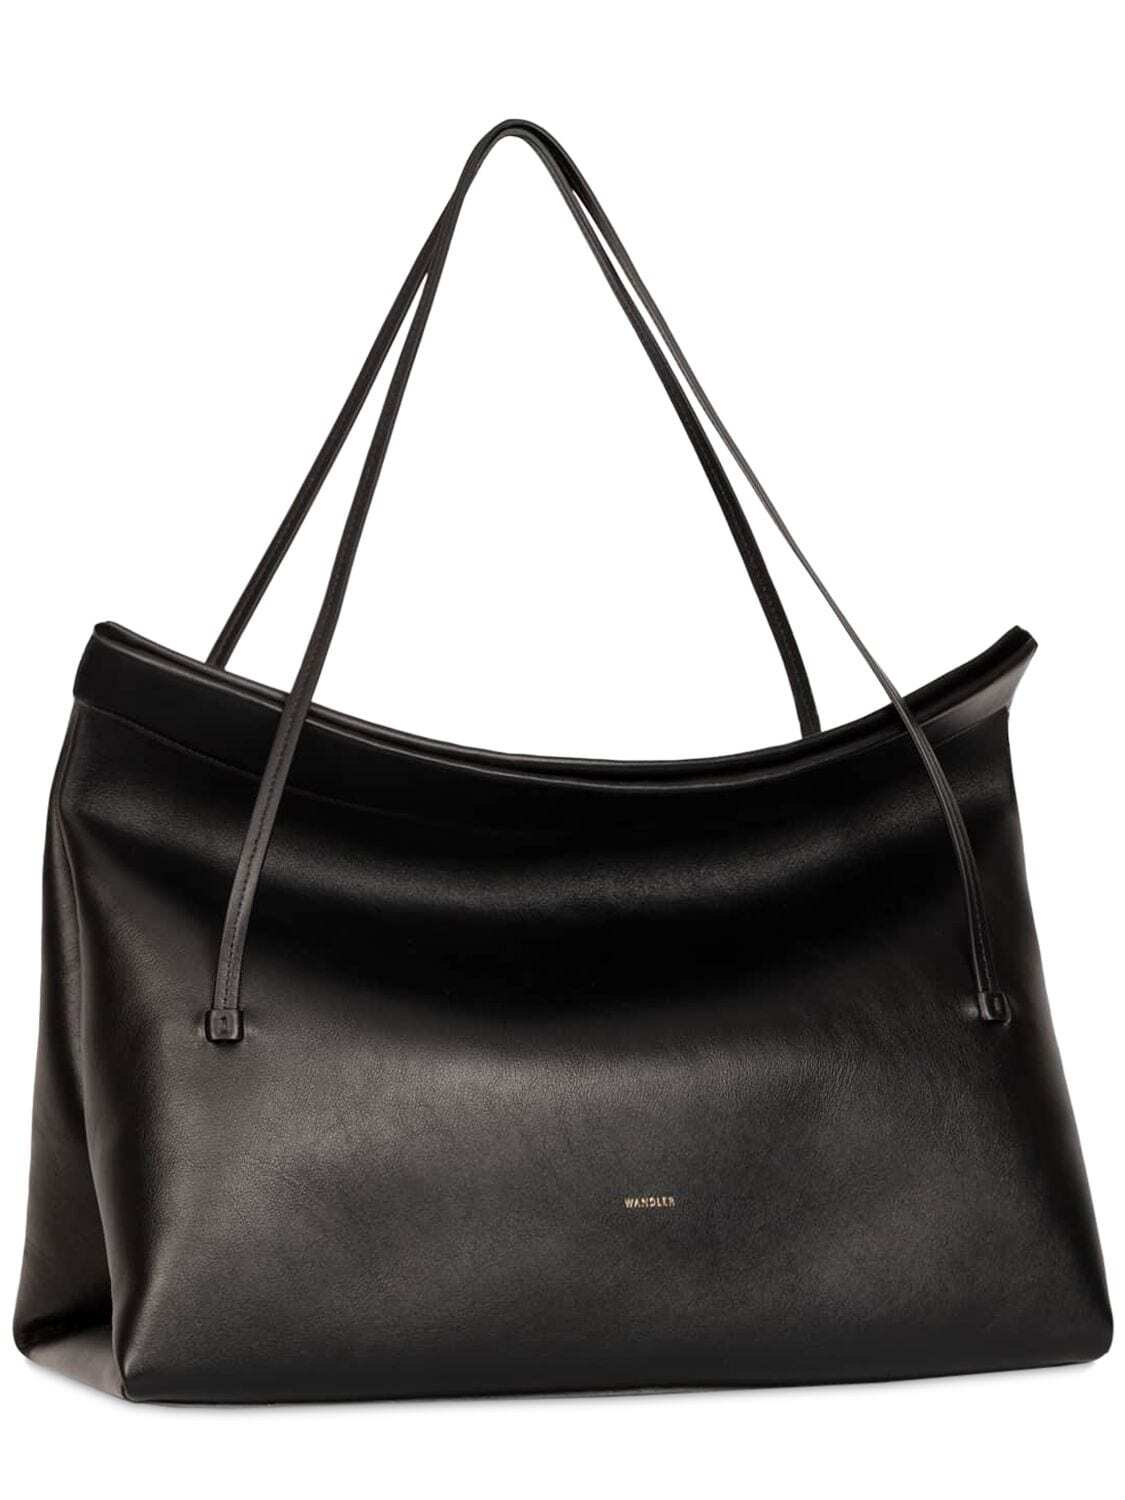 WANDLER Medium Joanna Leather Shoulder Bag in black